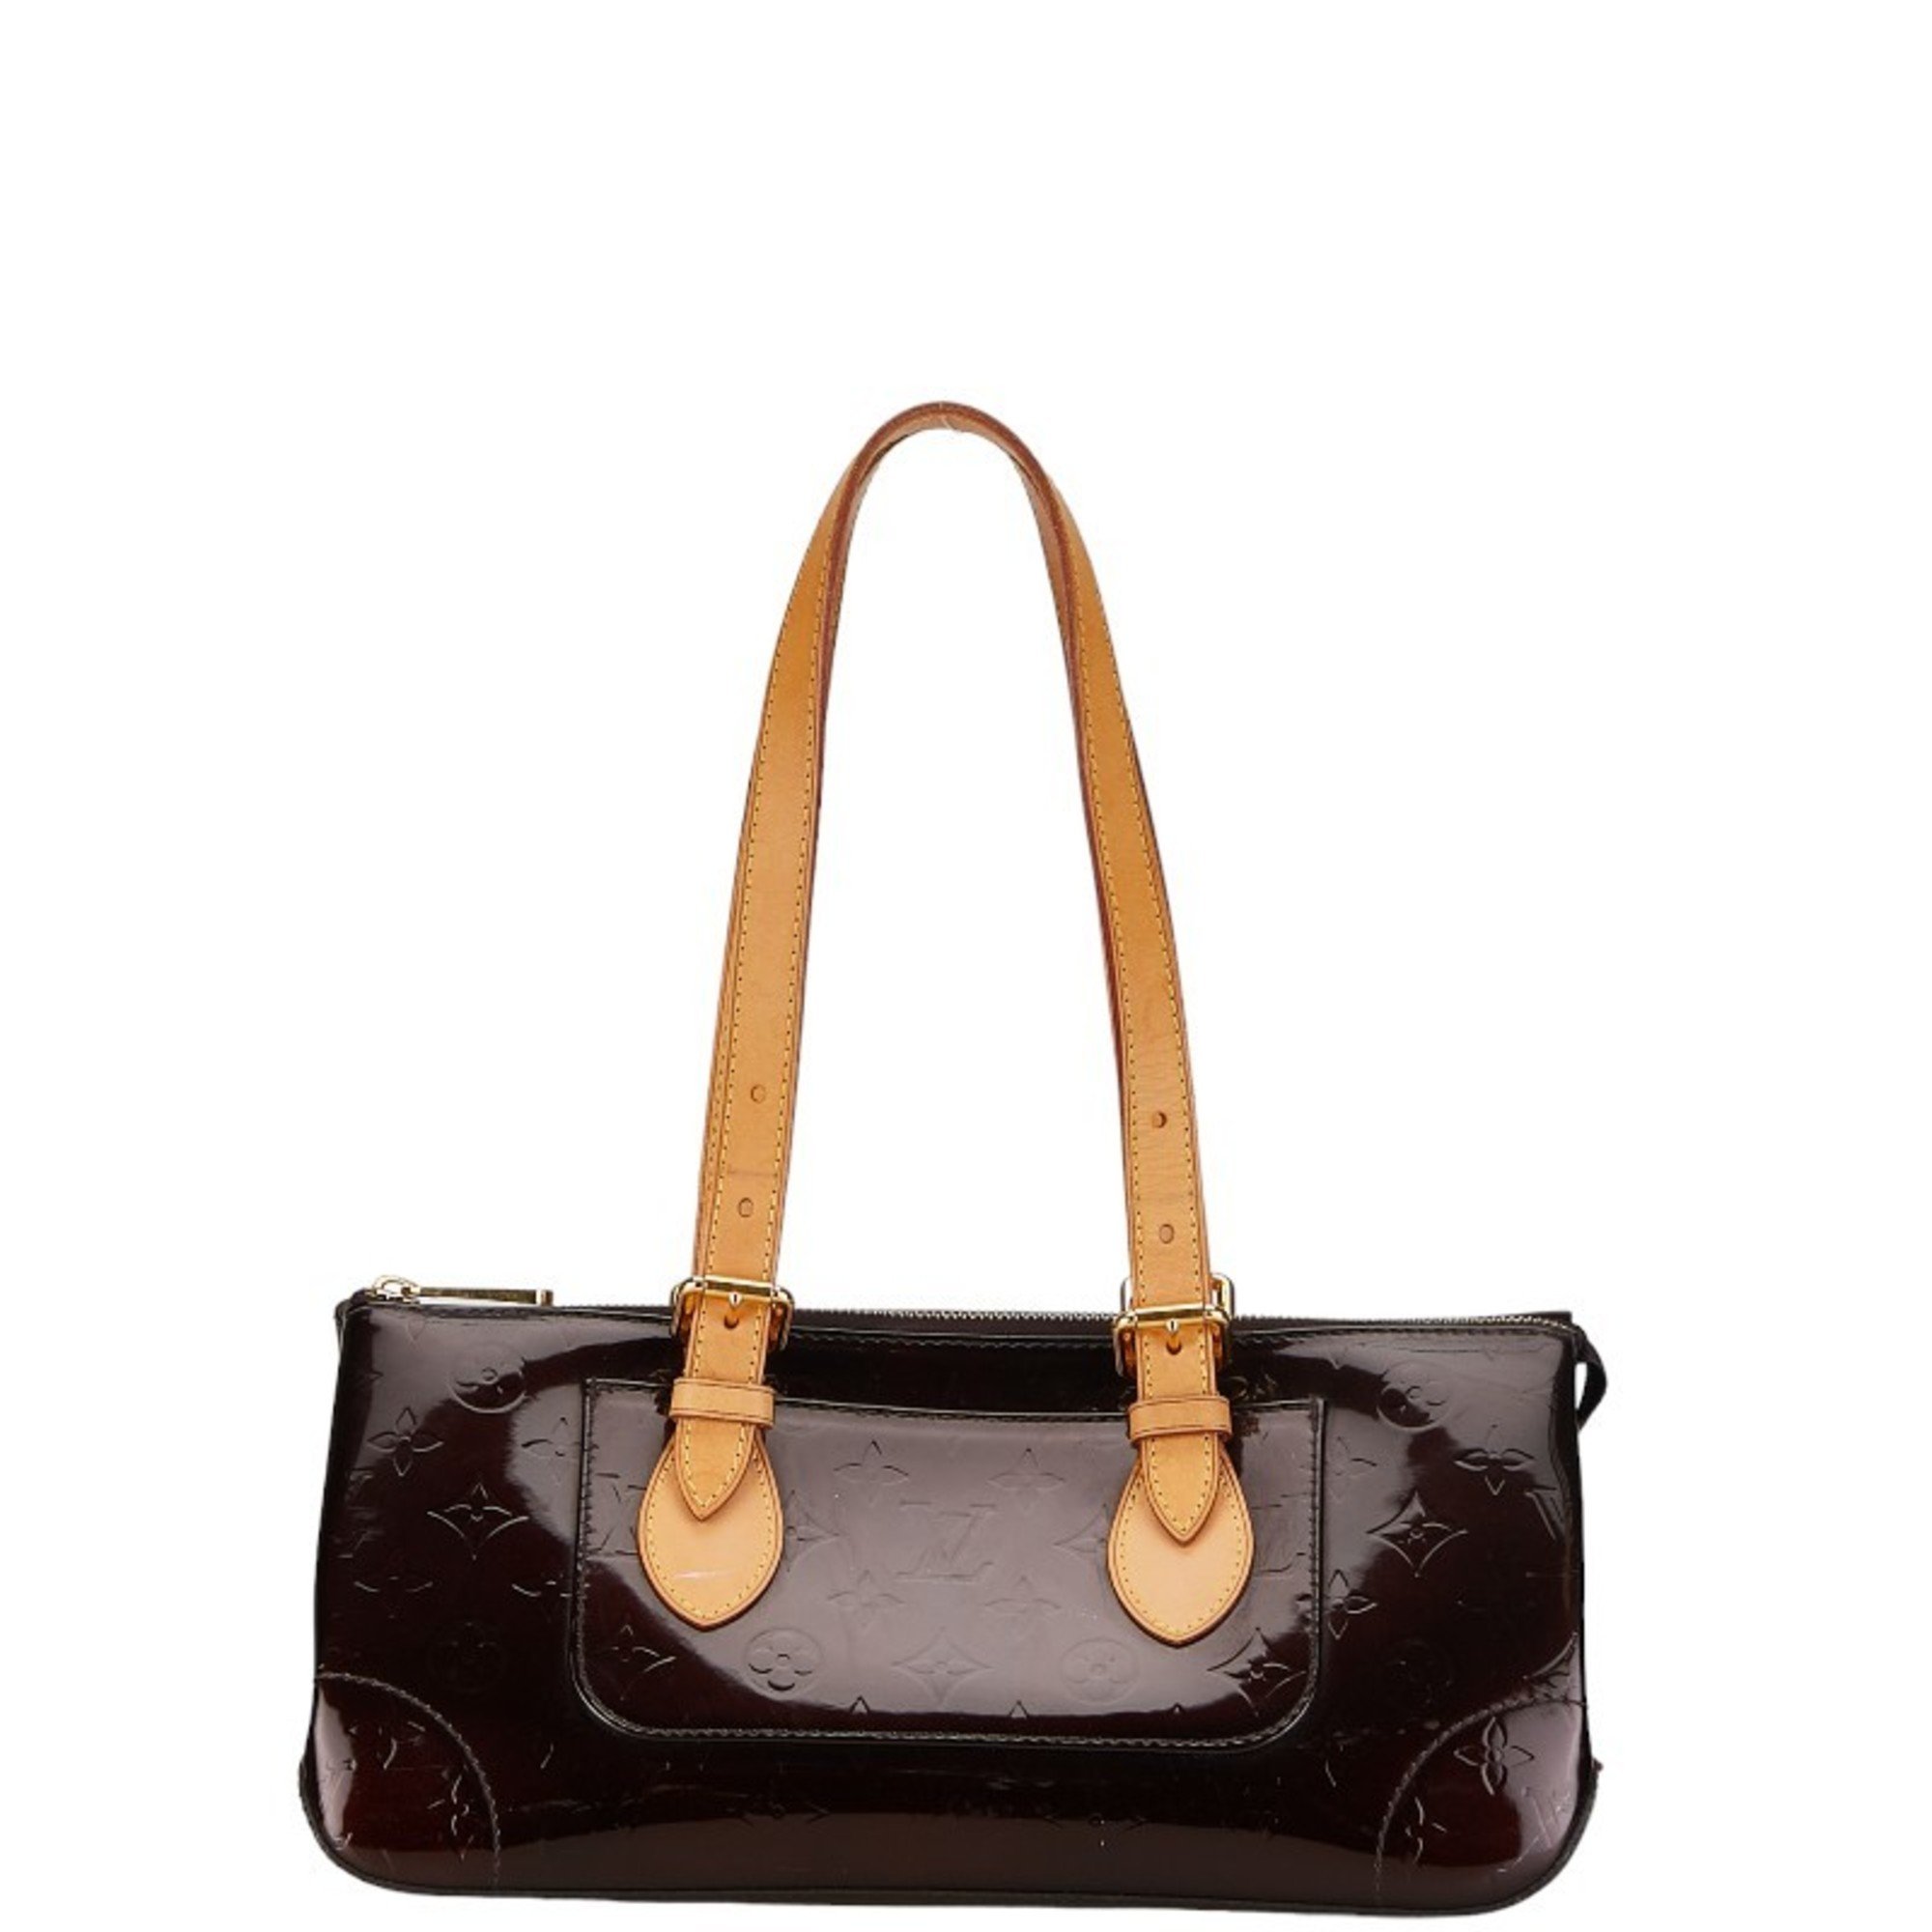 Louis Vuitton Monogram Vernis Rosewood Avenue Handbag Tote Bag M93510 Amaranth Purple Patent Leather Women's LOUIS VUITTON